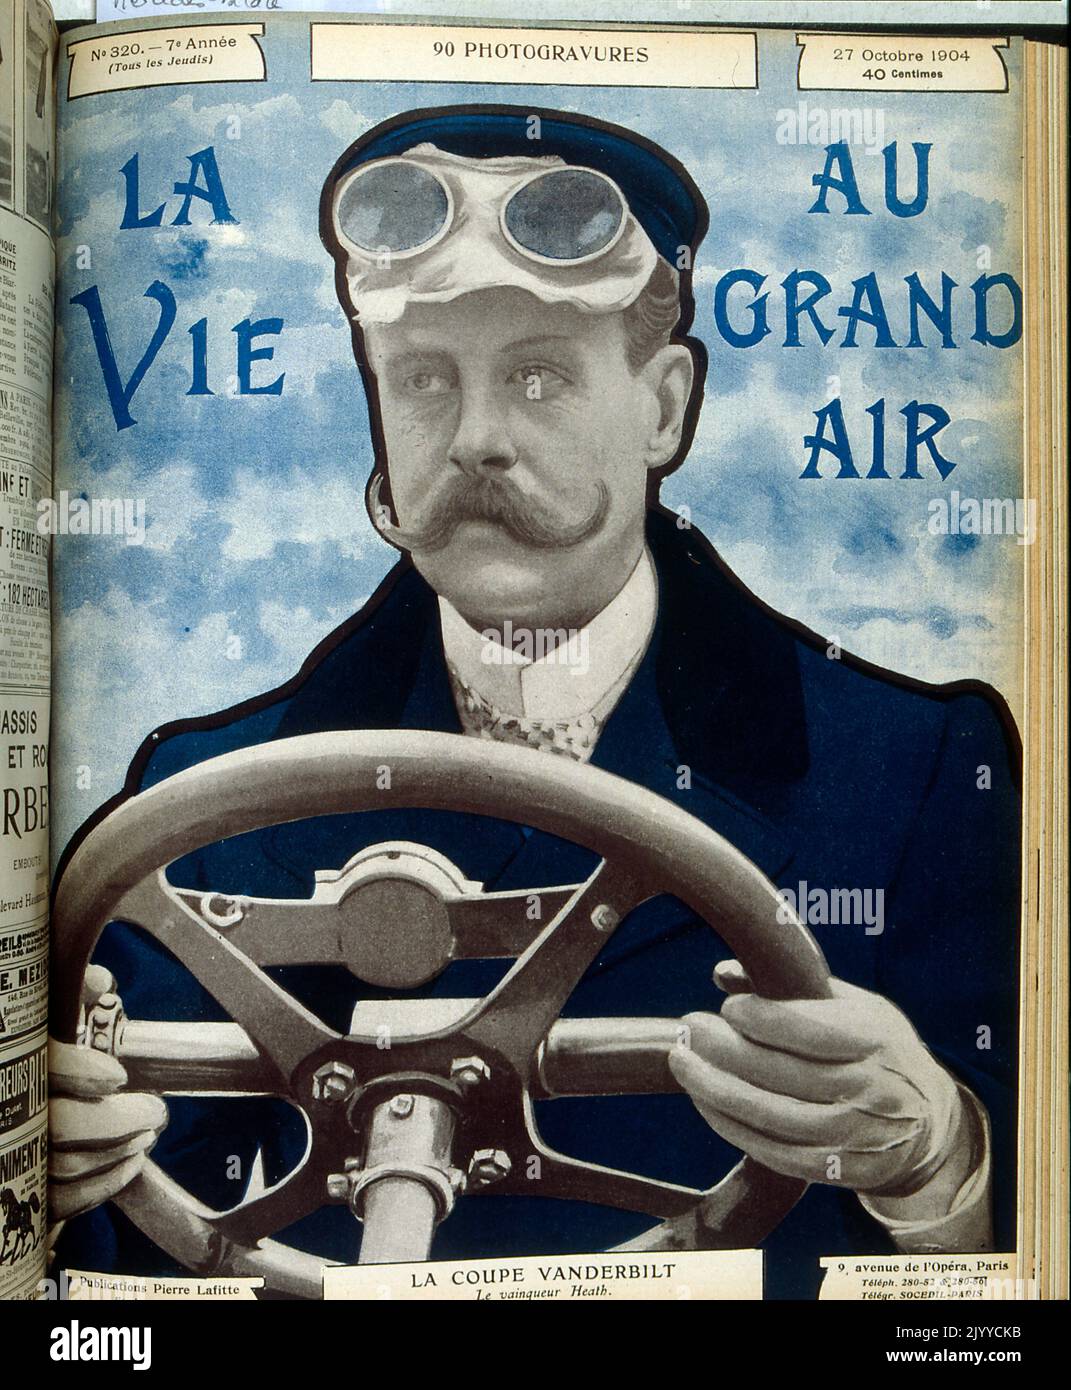 Fotografa all'interno della rivista lifestyle la vie au Grand Air; un uomo al volante di un'auto; fa pubblicità a un'auto chiamata Coupe Vanderbilt. Del 27 ottobre 1904. Foto Stock